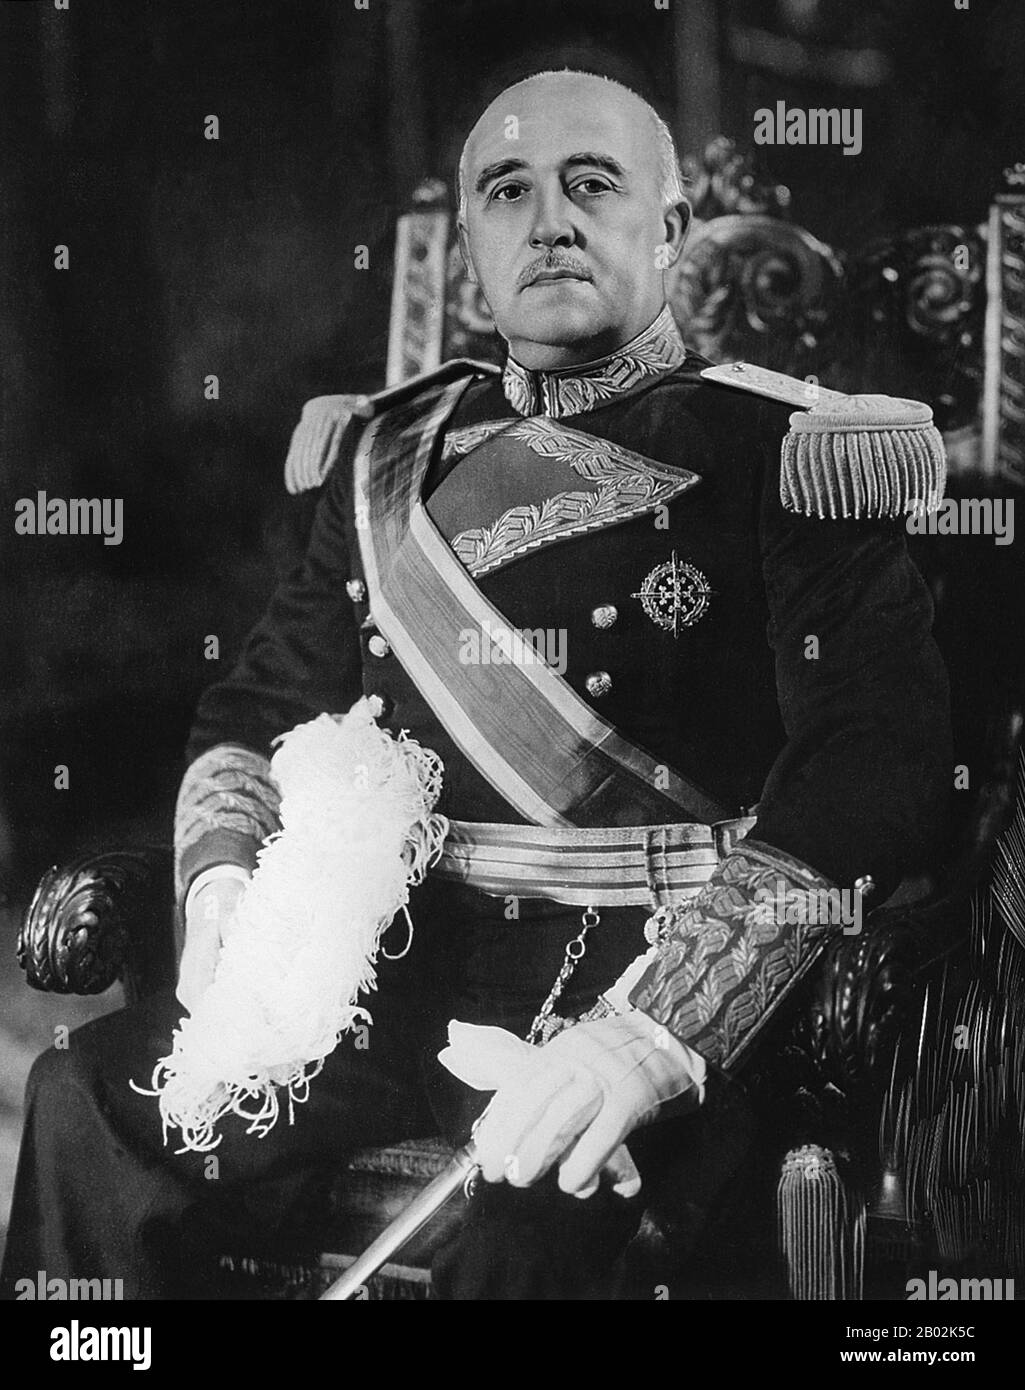 Francisco Franco Bahamonde (4 décembre 1892 – 20 novembre 1975) fut le dictateur de l'Espagne de 1939 à sa mort en 1975. Conservateur, il fut choqué quand la monarchie fut enlevée et remplacée par une république démocratique en 1931. Avec les élections de 1936, les conservateurs sont tombés et le Front Populaire de gauche est arrivé au pouvoir. Cherchant à renverser la république, Franco et d'autres généraux ont mis en place un coup d'État partiellement réussi, qui a commencé la guerre civile espagnole. Avec la mort des autres généraux, Franco est rapidement devenu le seul chef de sa faction. Franco a reçu le soutien militaire du fasciste local, Banque D'Images